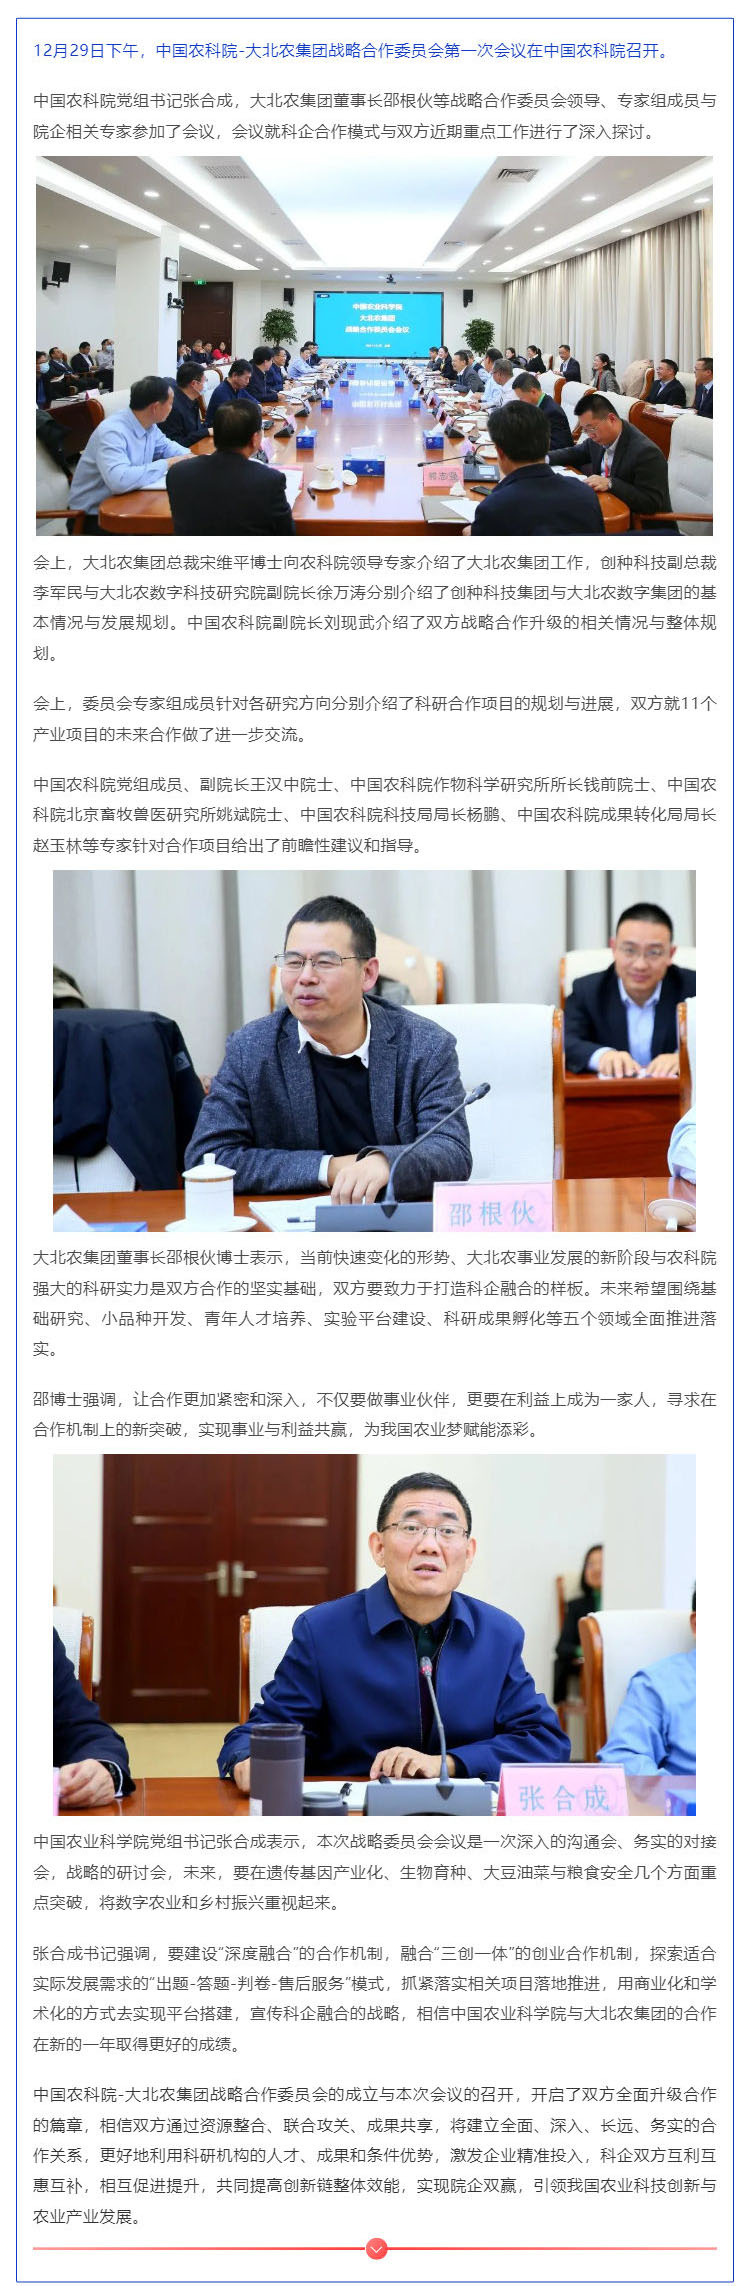 中国农科院-大北农集团战略合作委员会召开第一次会议_壹伴长图1.jpg